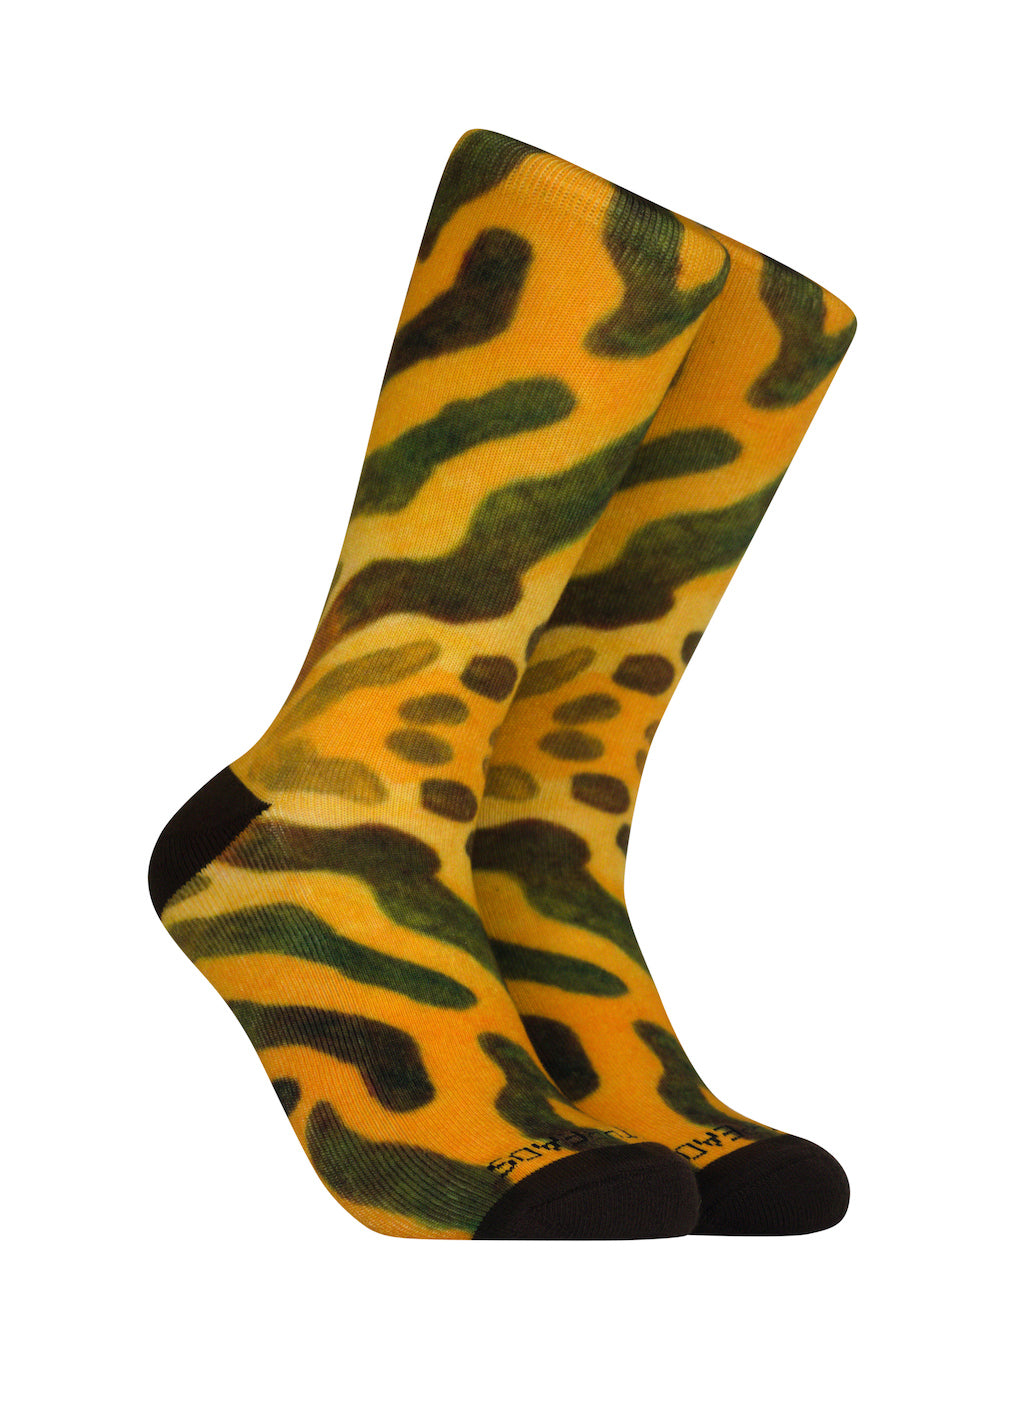 Muskellunge Socks - Novelty Fish Socks- Gifts for Fishermen – Reel Threads